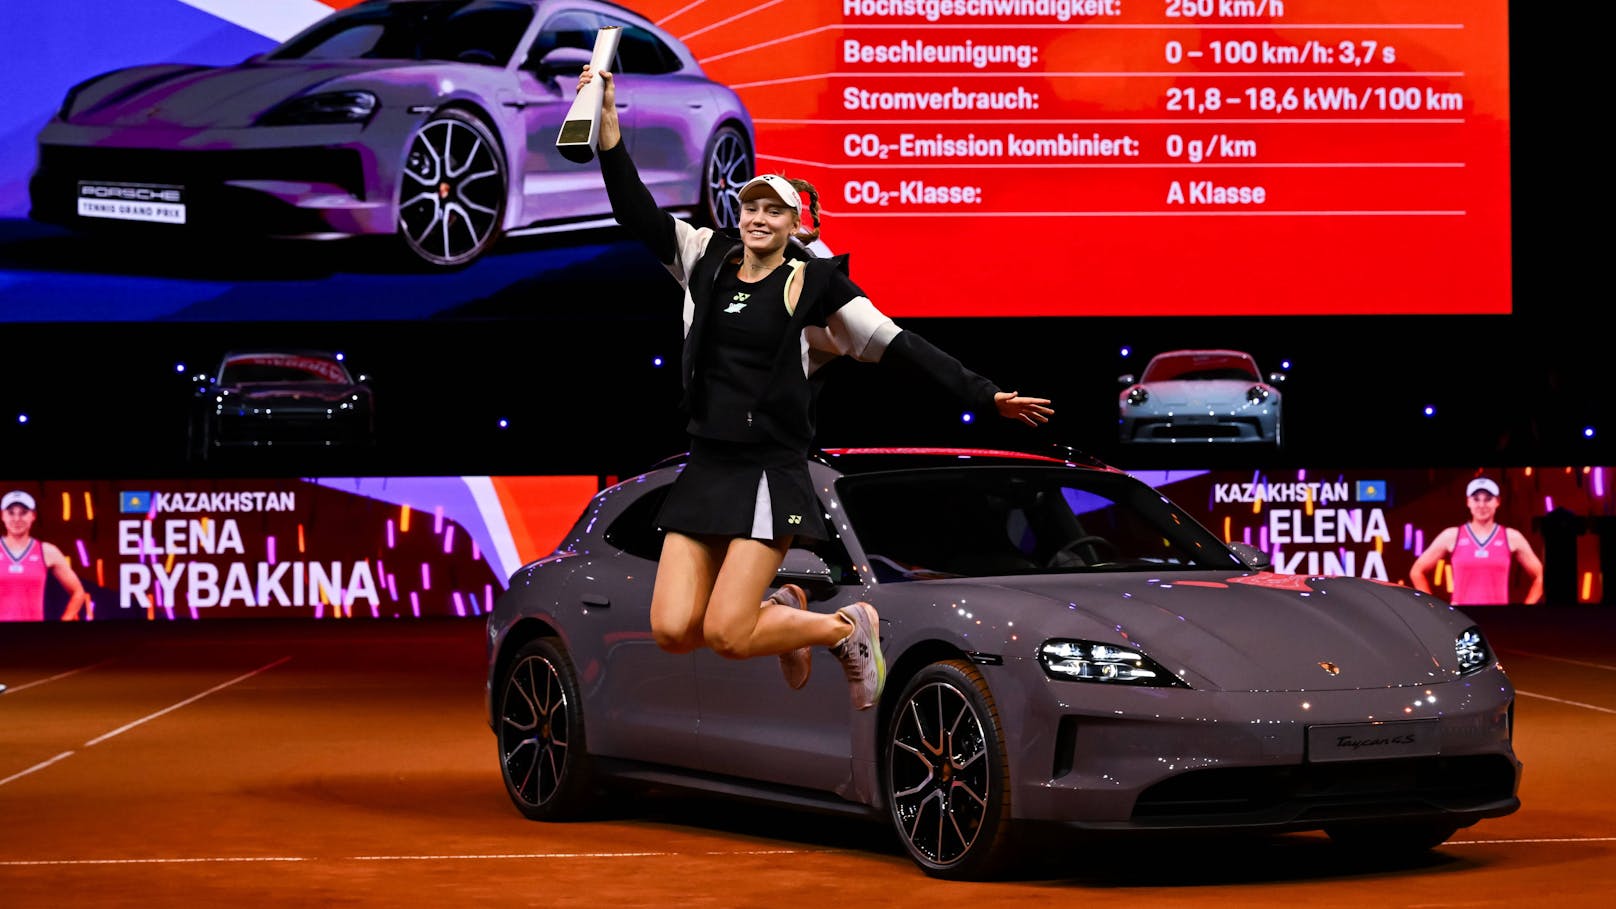 Porsche als Prämie – Tennis-Ass hat keinen Führerschein